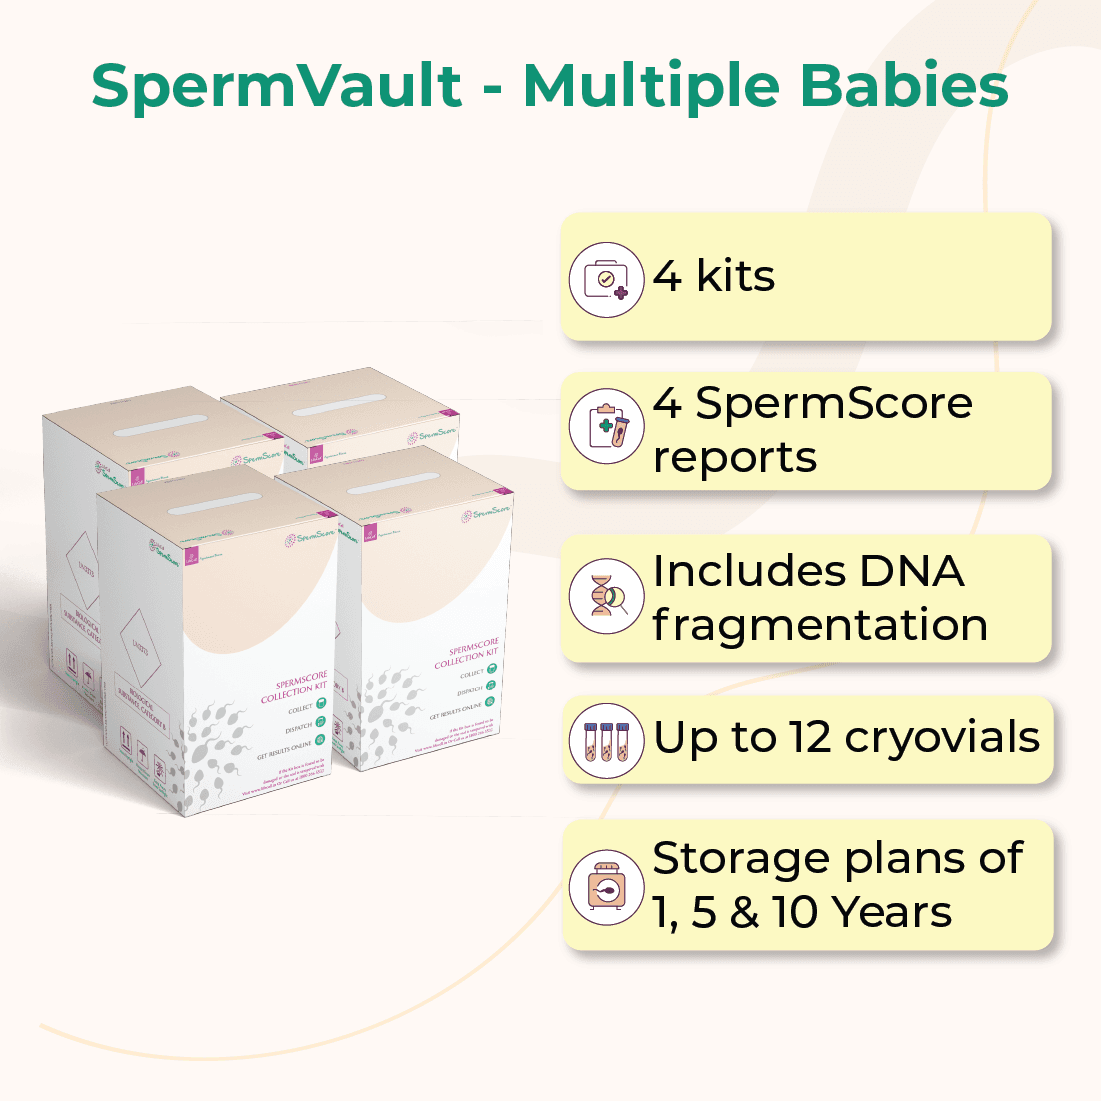 Spermvault - Sperm Freezing Kit For Multiple Babies